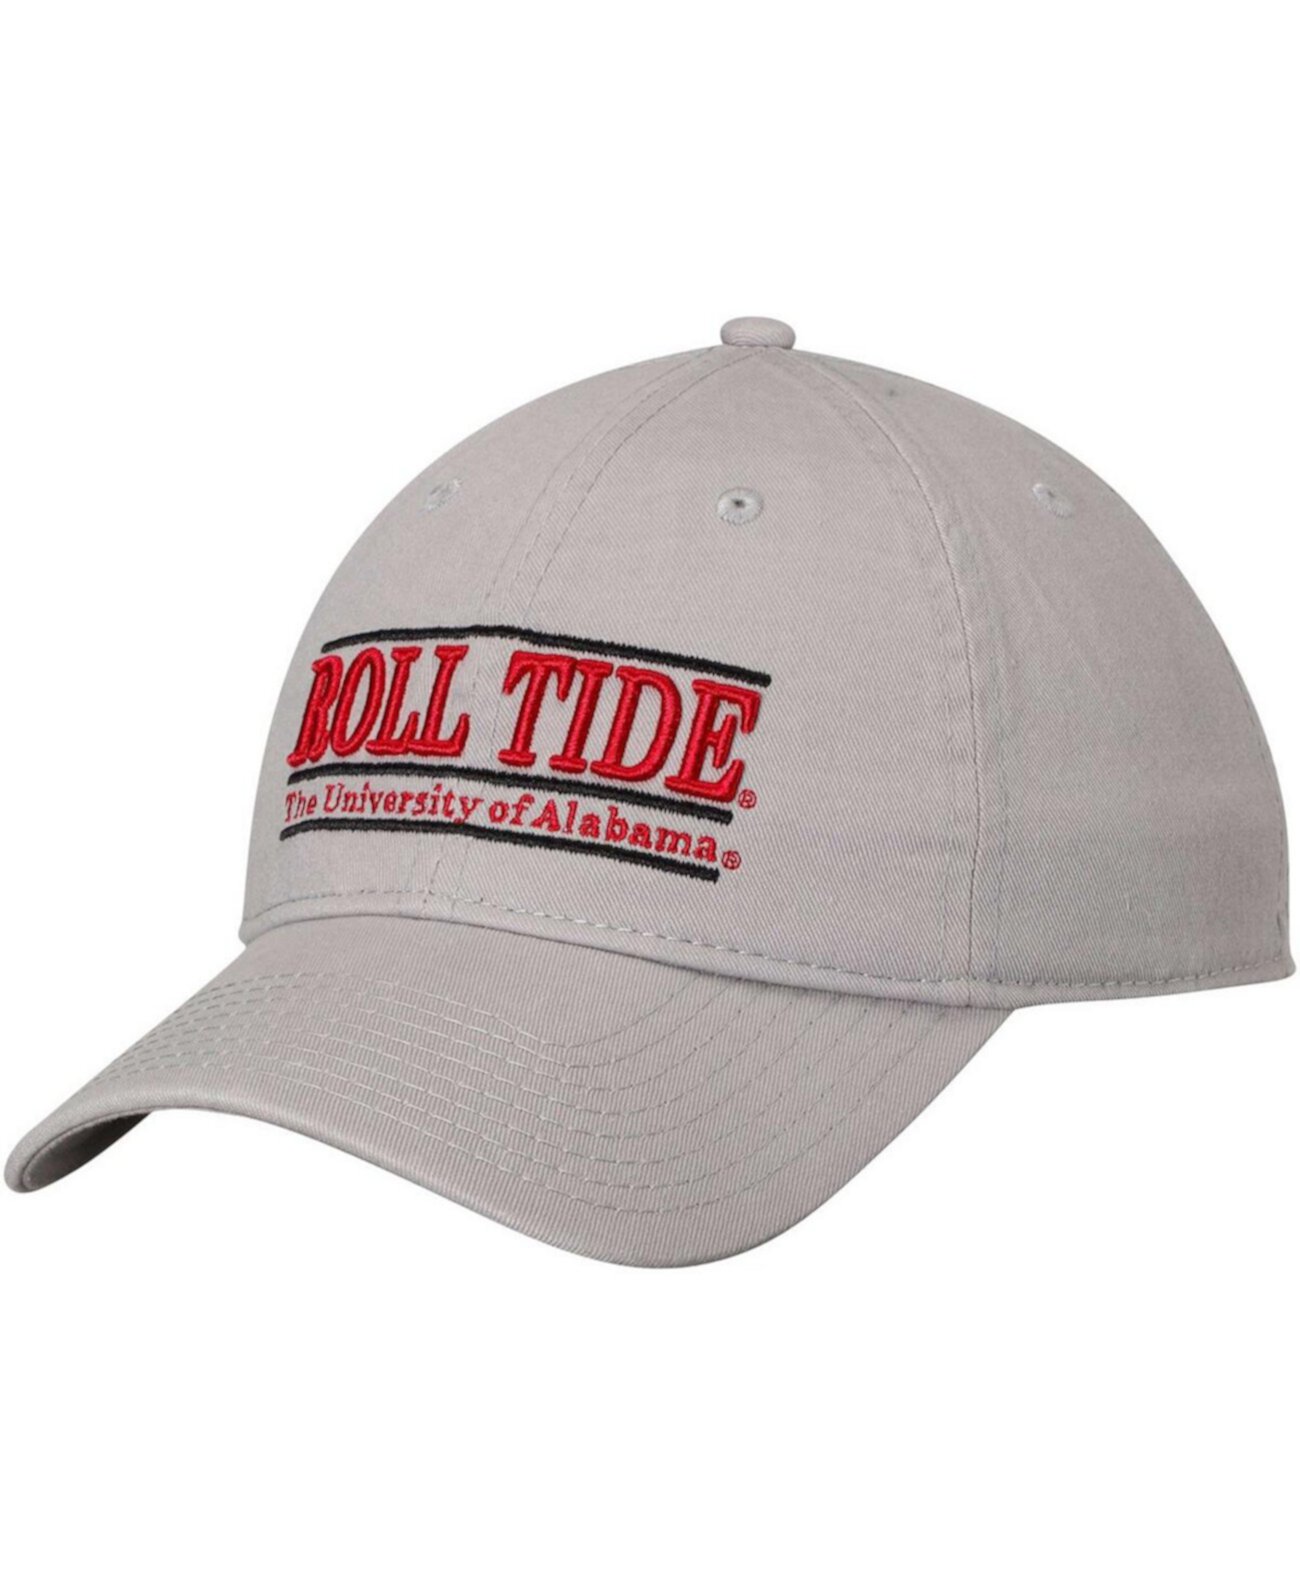 Мужская серая регулируемая шляпа Crimson Tide Roll Tide Classic Bar с неструктурированной регулировкой Game